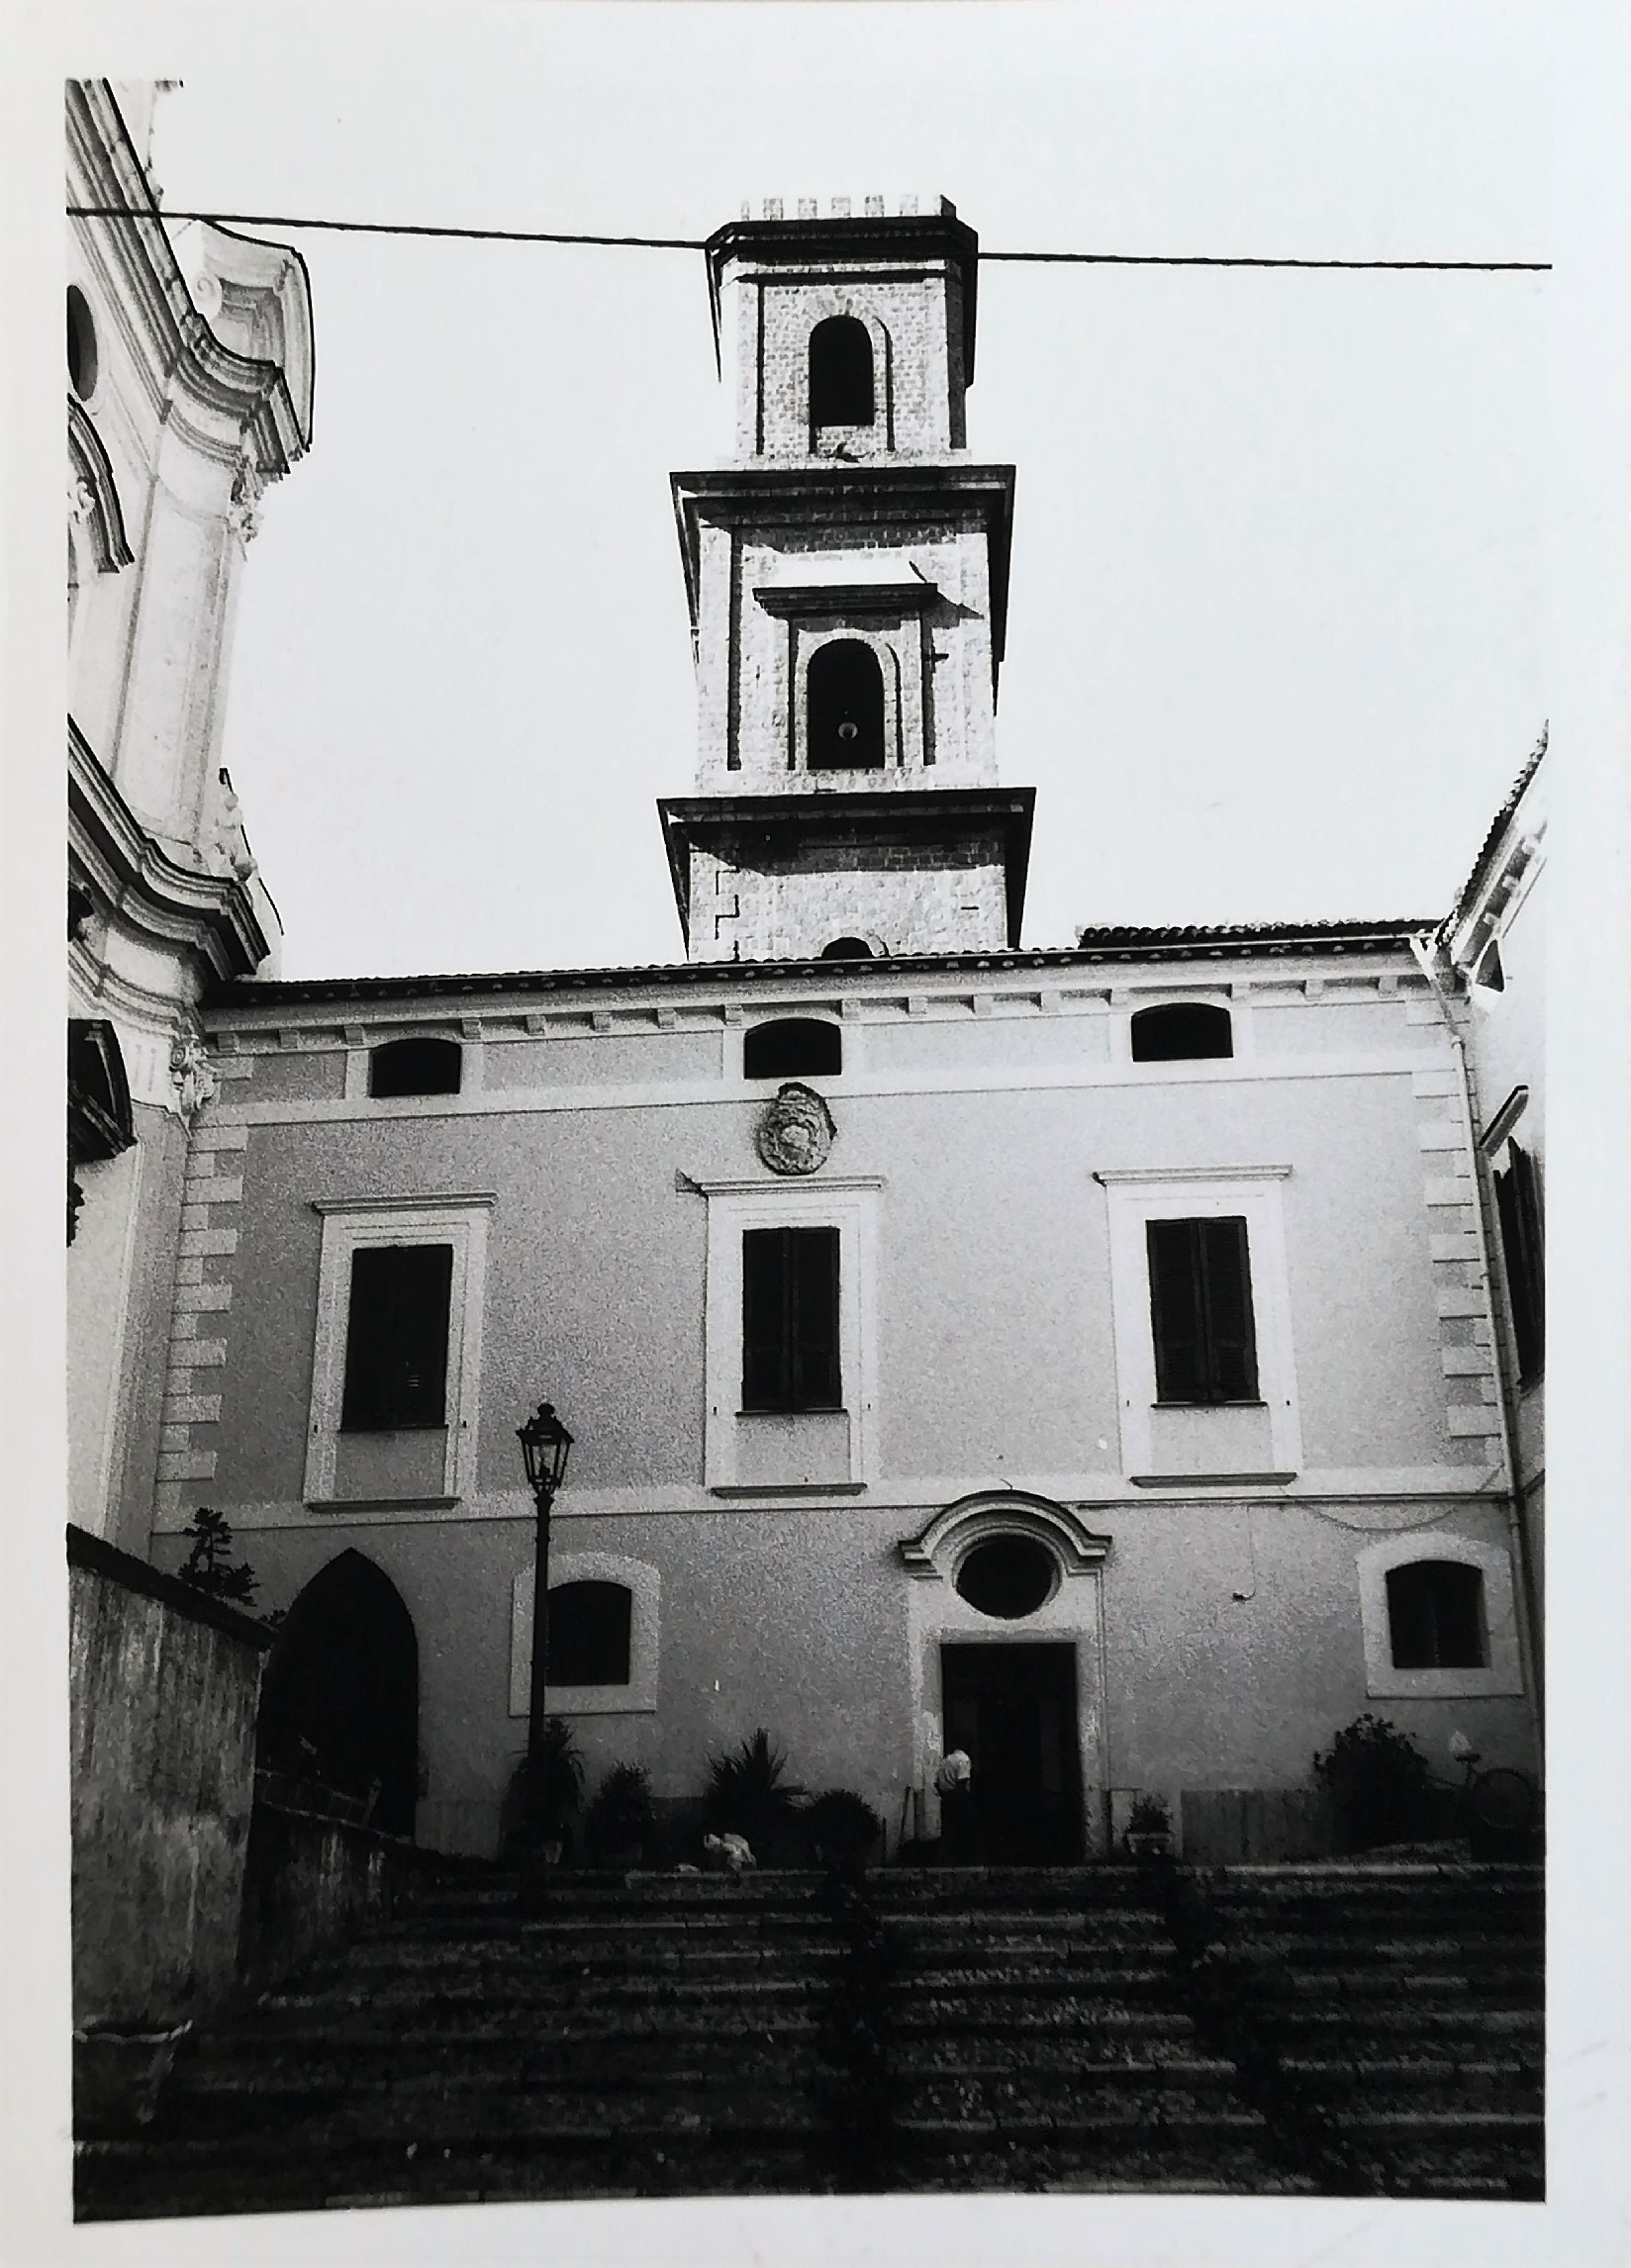 Palazzo vescovile (palazzo, vescovile) - Caiazzo (CE)  (XVII)